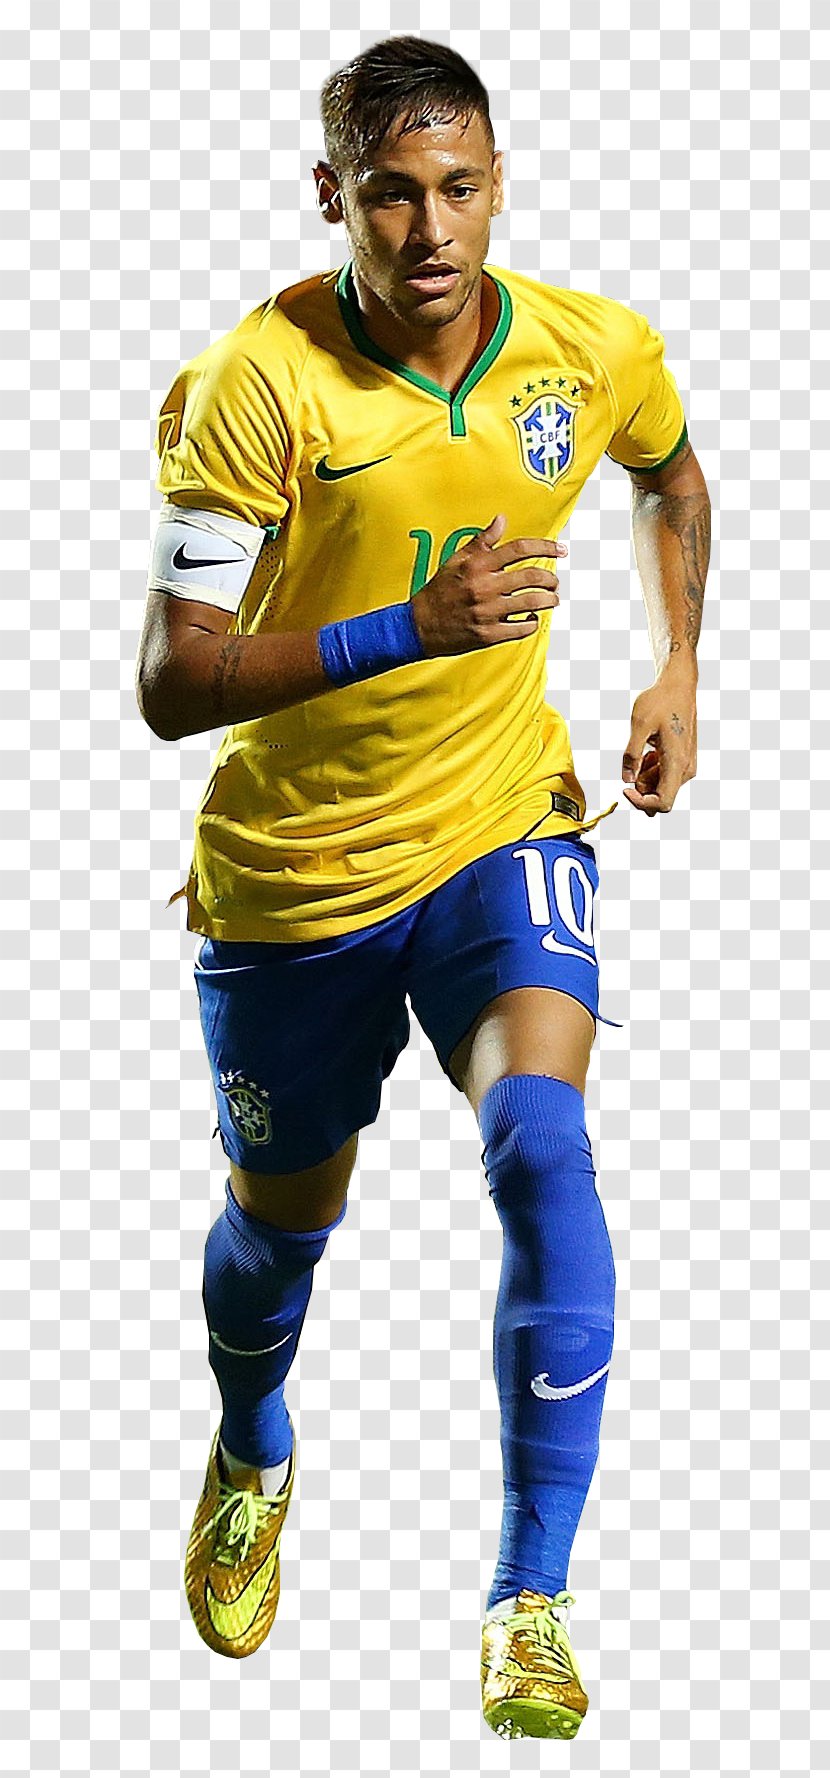 Team Sport Football T-shirt Uniform - Jersey - Brazil Player Transparent PNG